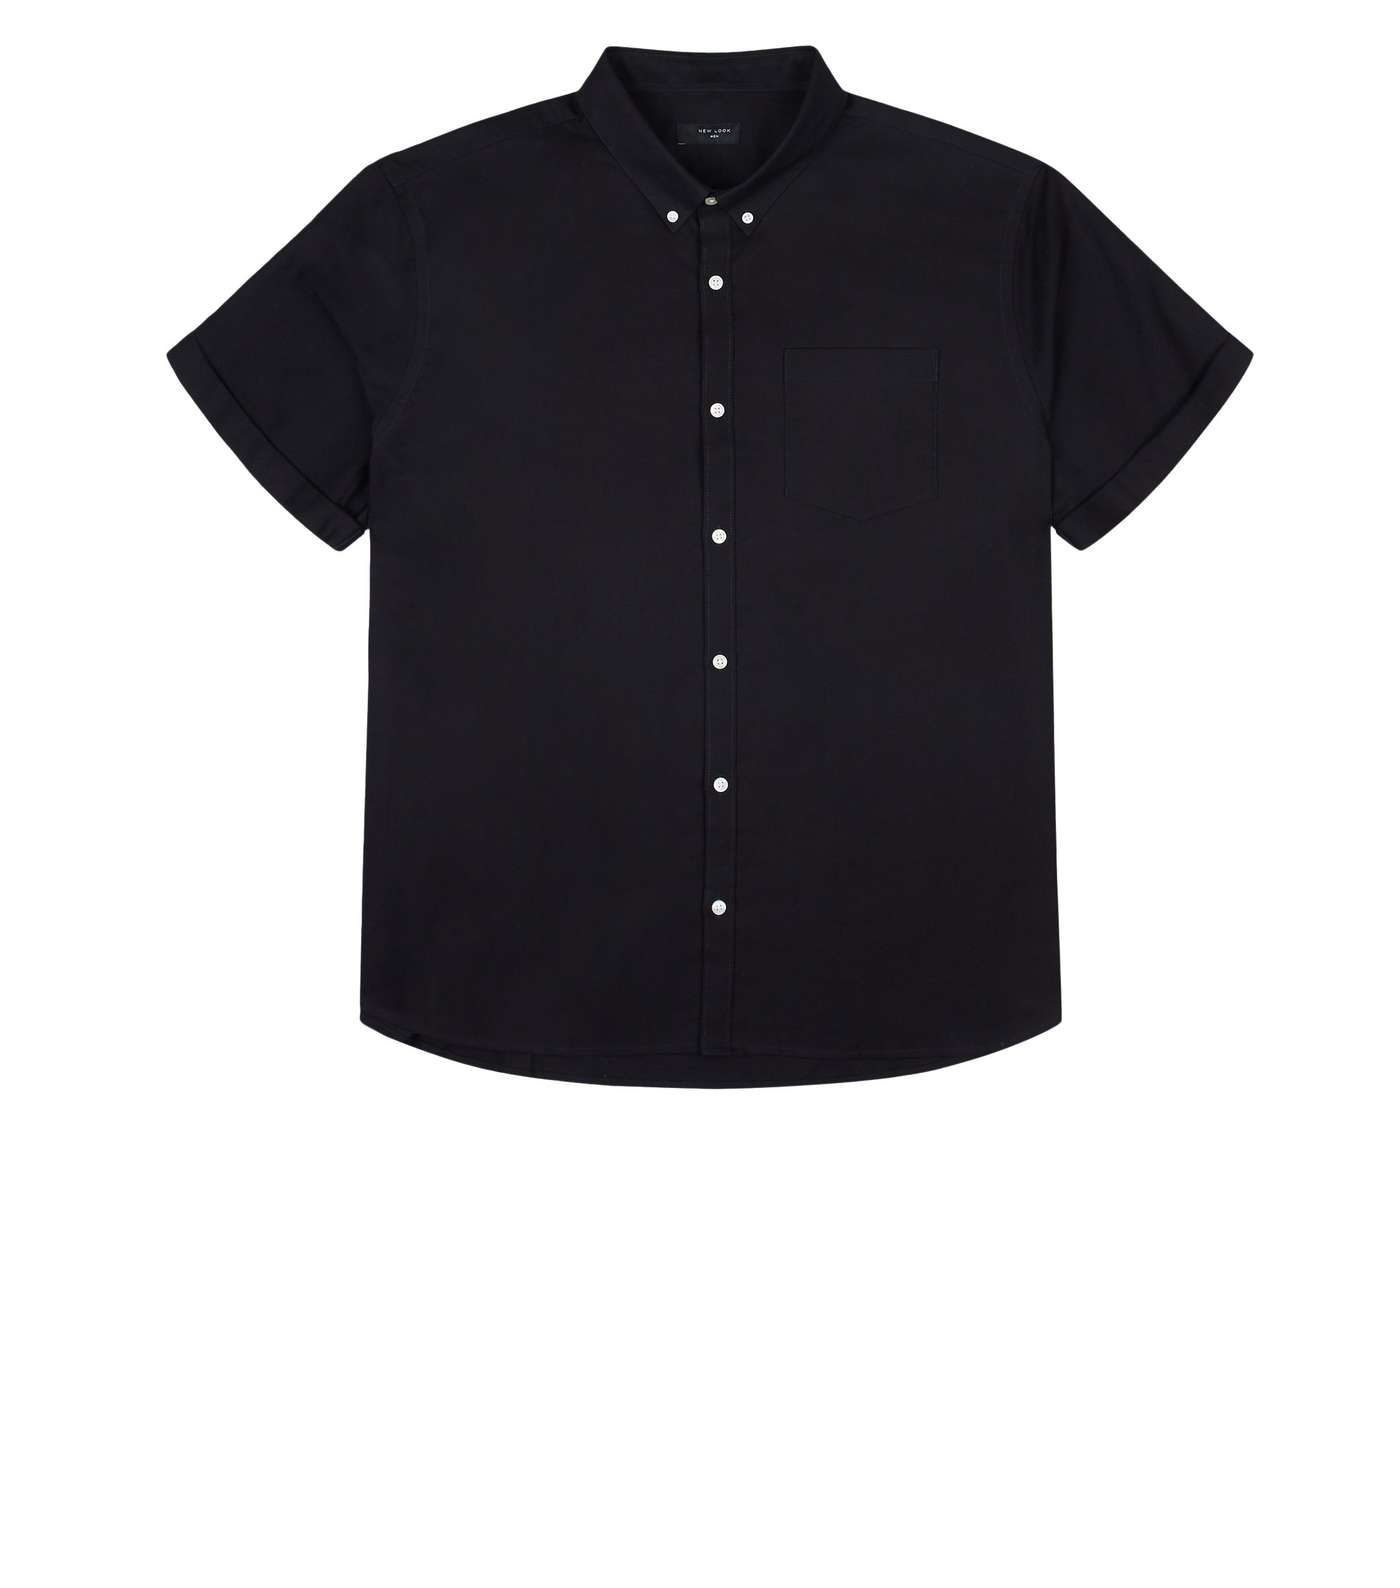 Plus Size Black Short Sleeve Oxford Shirt Image 4